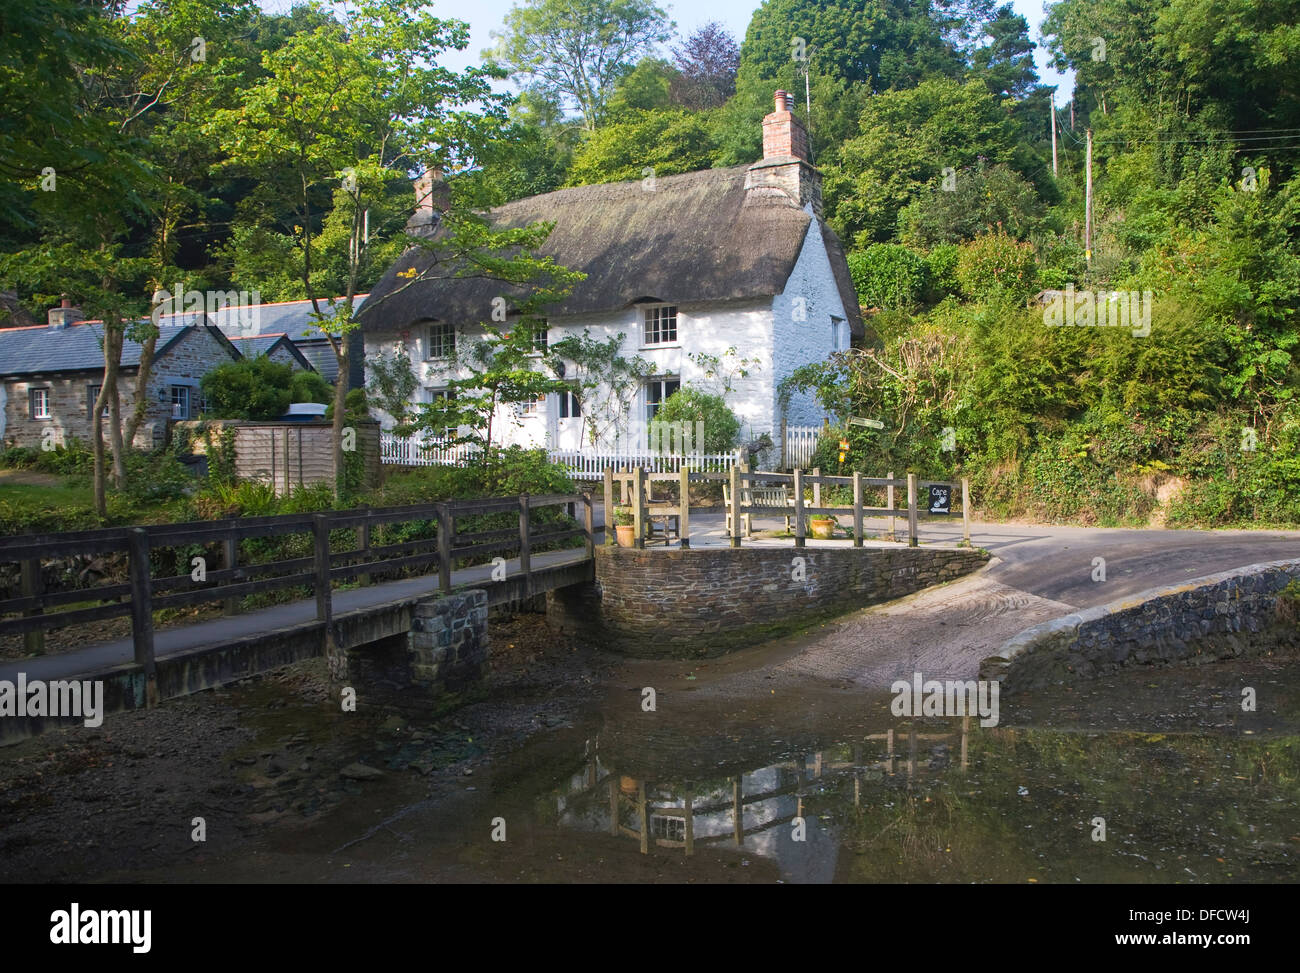 Jolie chaumière traditionnelle dans le village de village Helford, Cornwall, Angleterre Banque D'Images